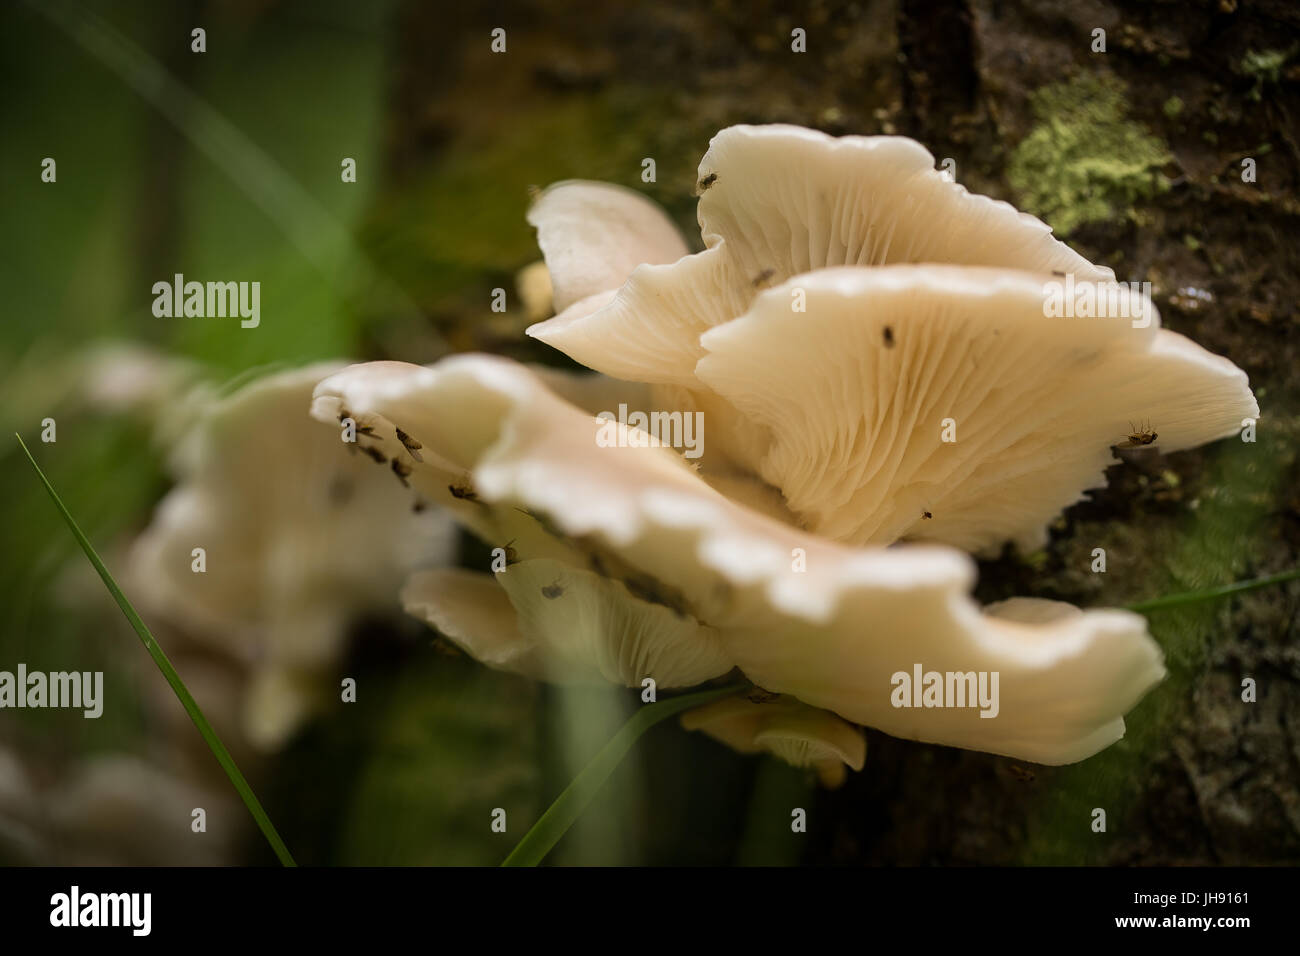 Bel bianco di funghi che crescono su una corteccia di albero in estate dopo la pioggia. Foto Stock